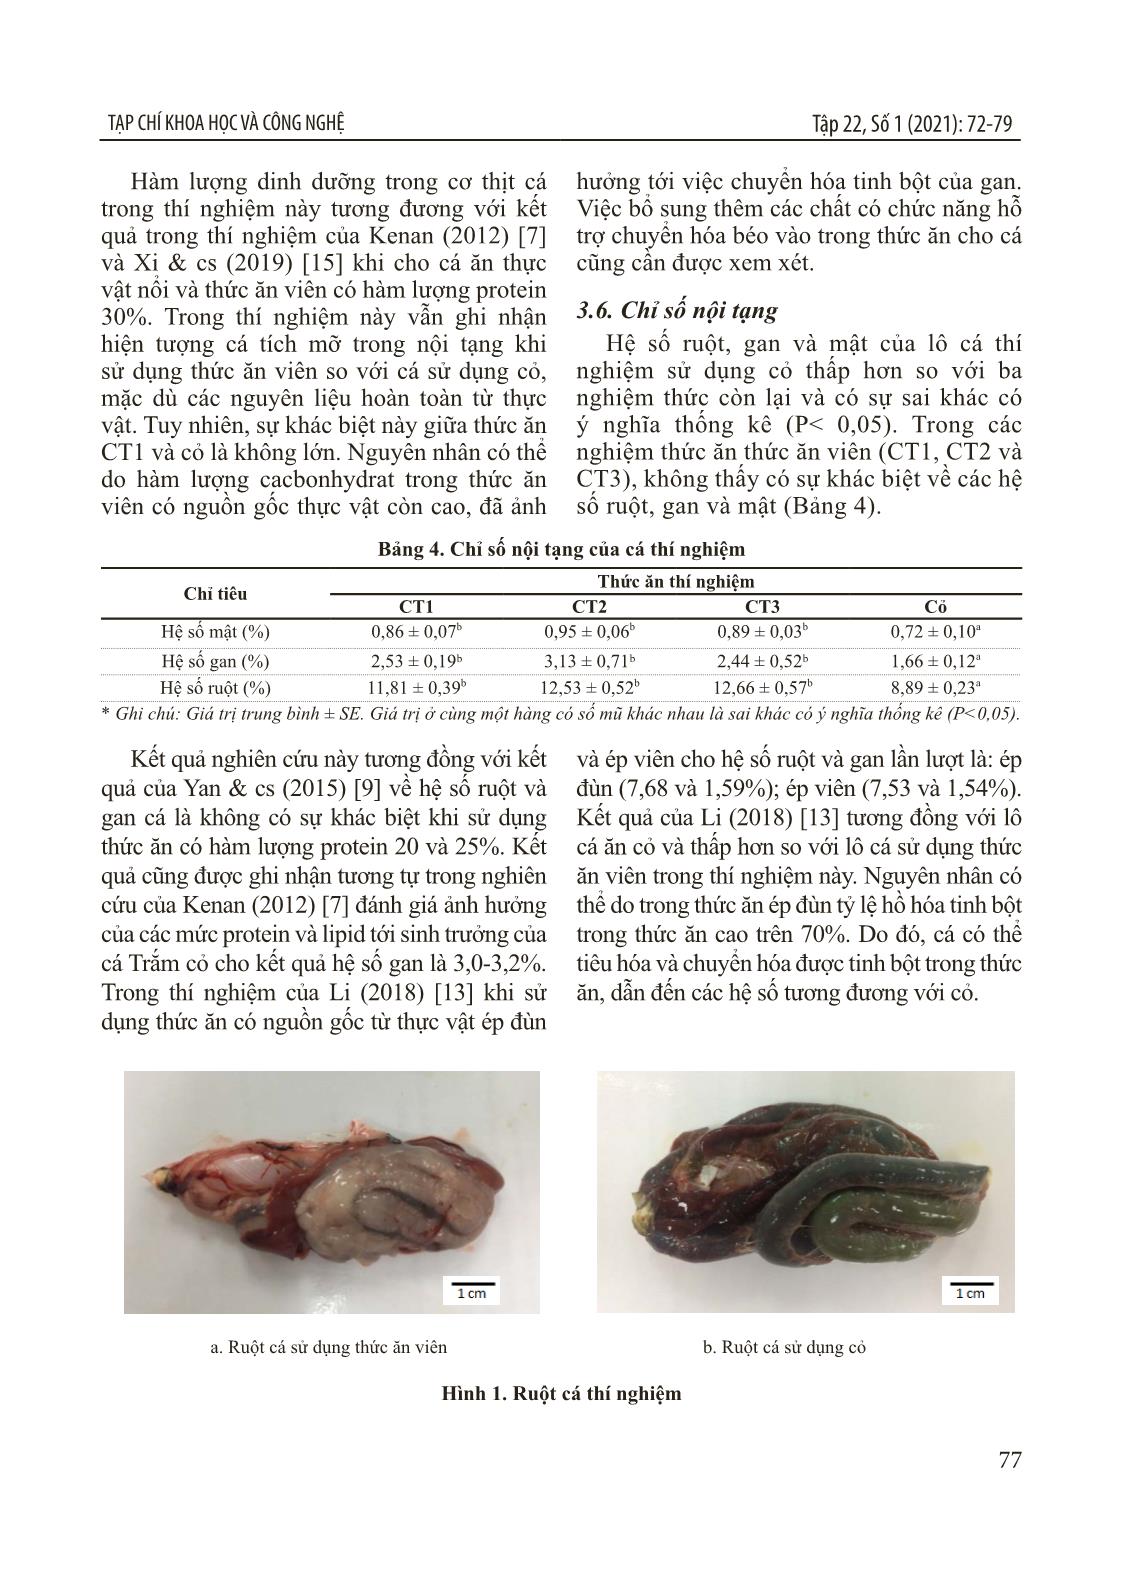 Ảnh hưởng của các mức protein khác nhau trong thức ăn tới sinh trưởng của cá trắm cỏ (ctenopharyngodon idellus) nuôi thương phẩm trang 6